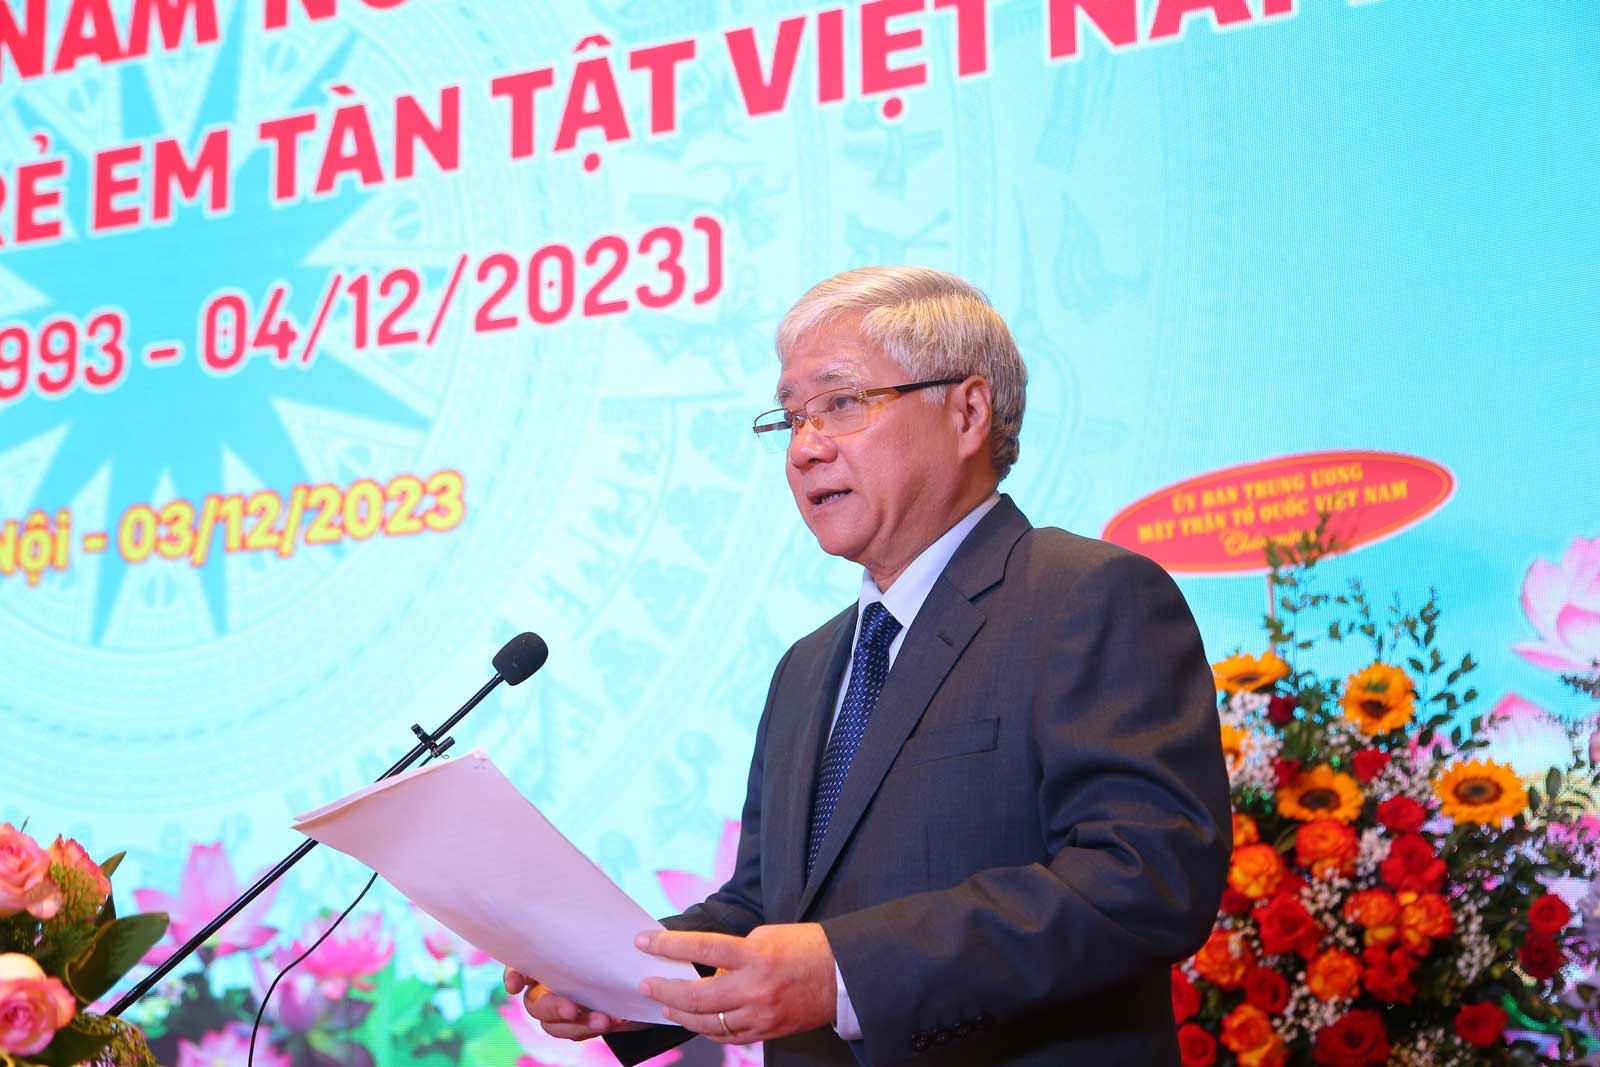 Chủ tịch Ủy ban Trung ương MTTQ Việt Nam Đỗ Văn Chiến phát biểu tại buổi lễ. Ảnh: Vĩnh Hoàng